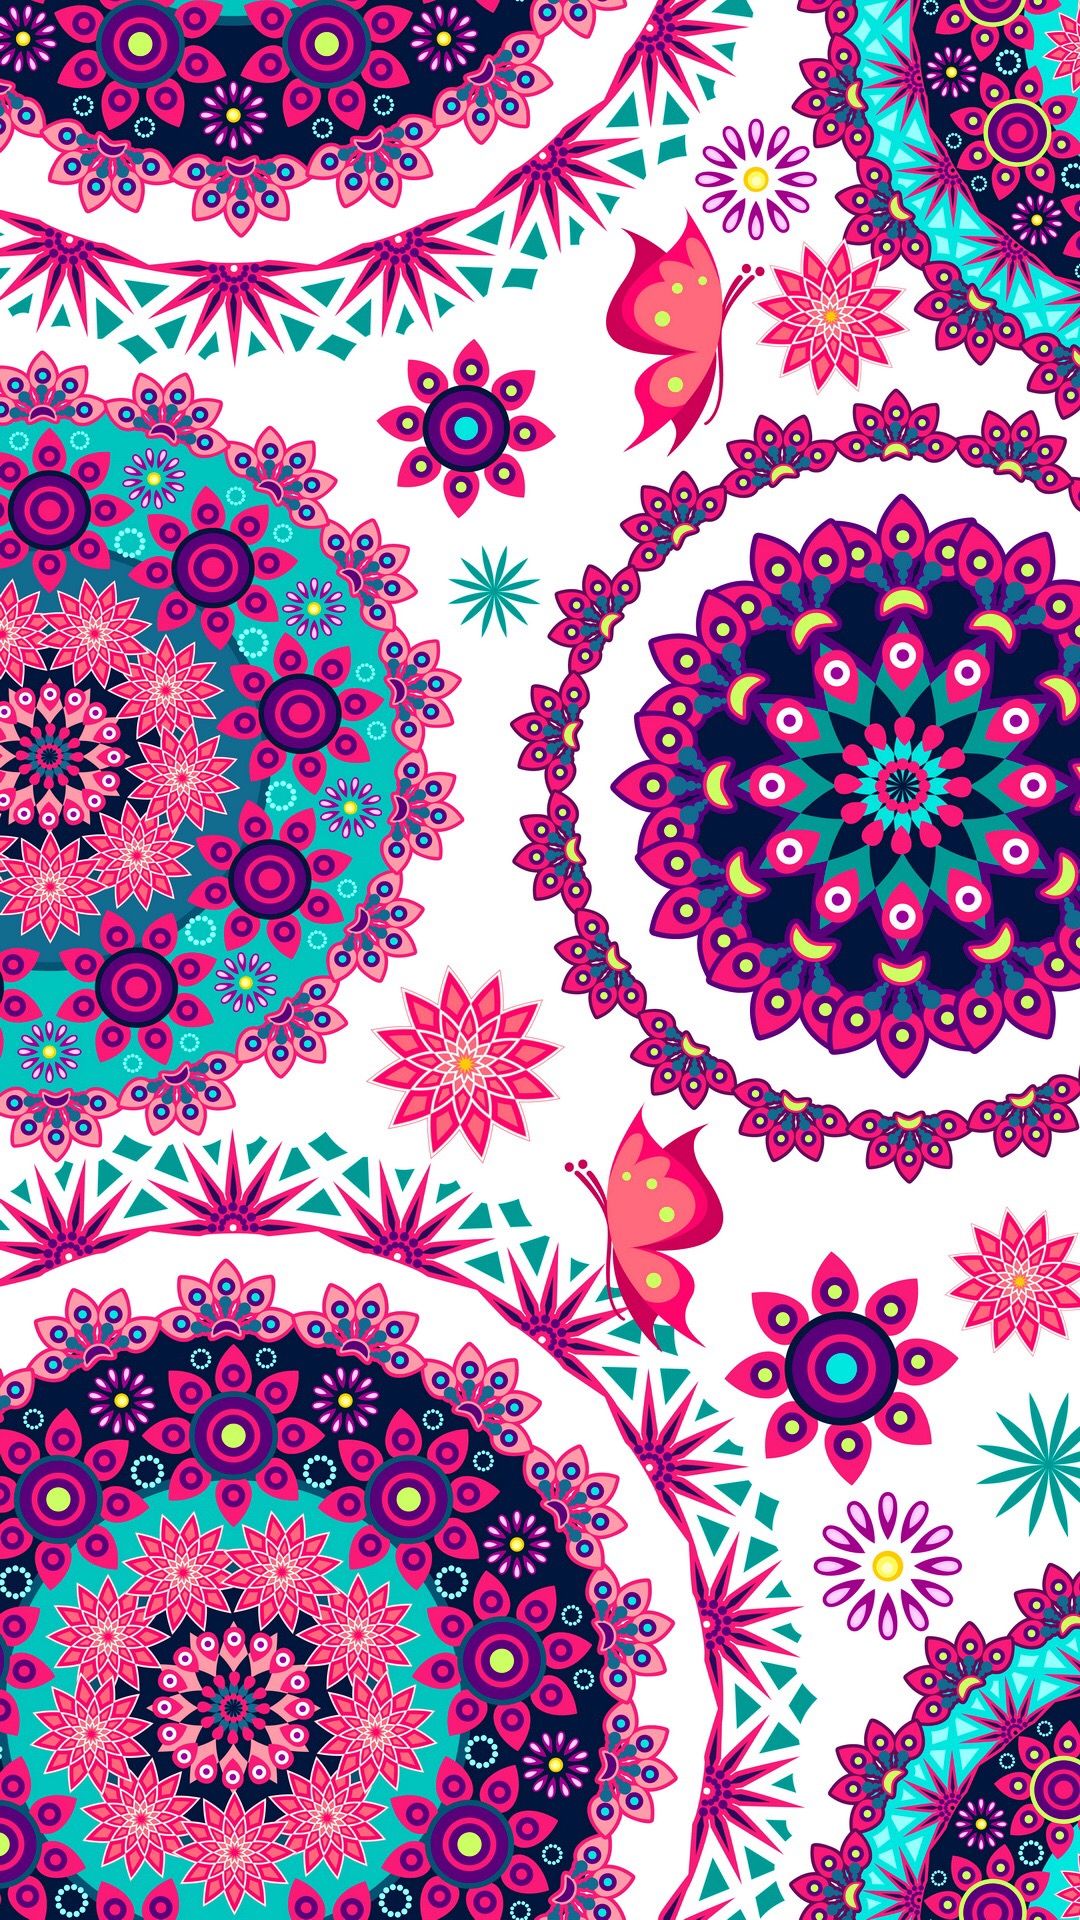 マンダラ壁紙,パターン,ピンク,設計,視覚芸術,繊維